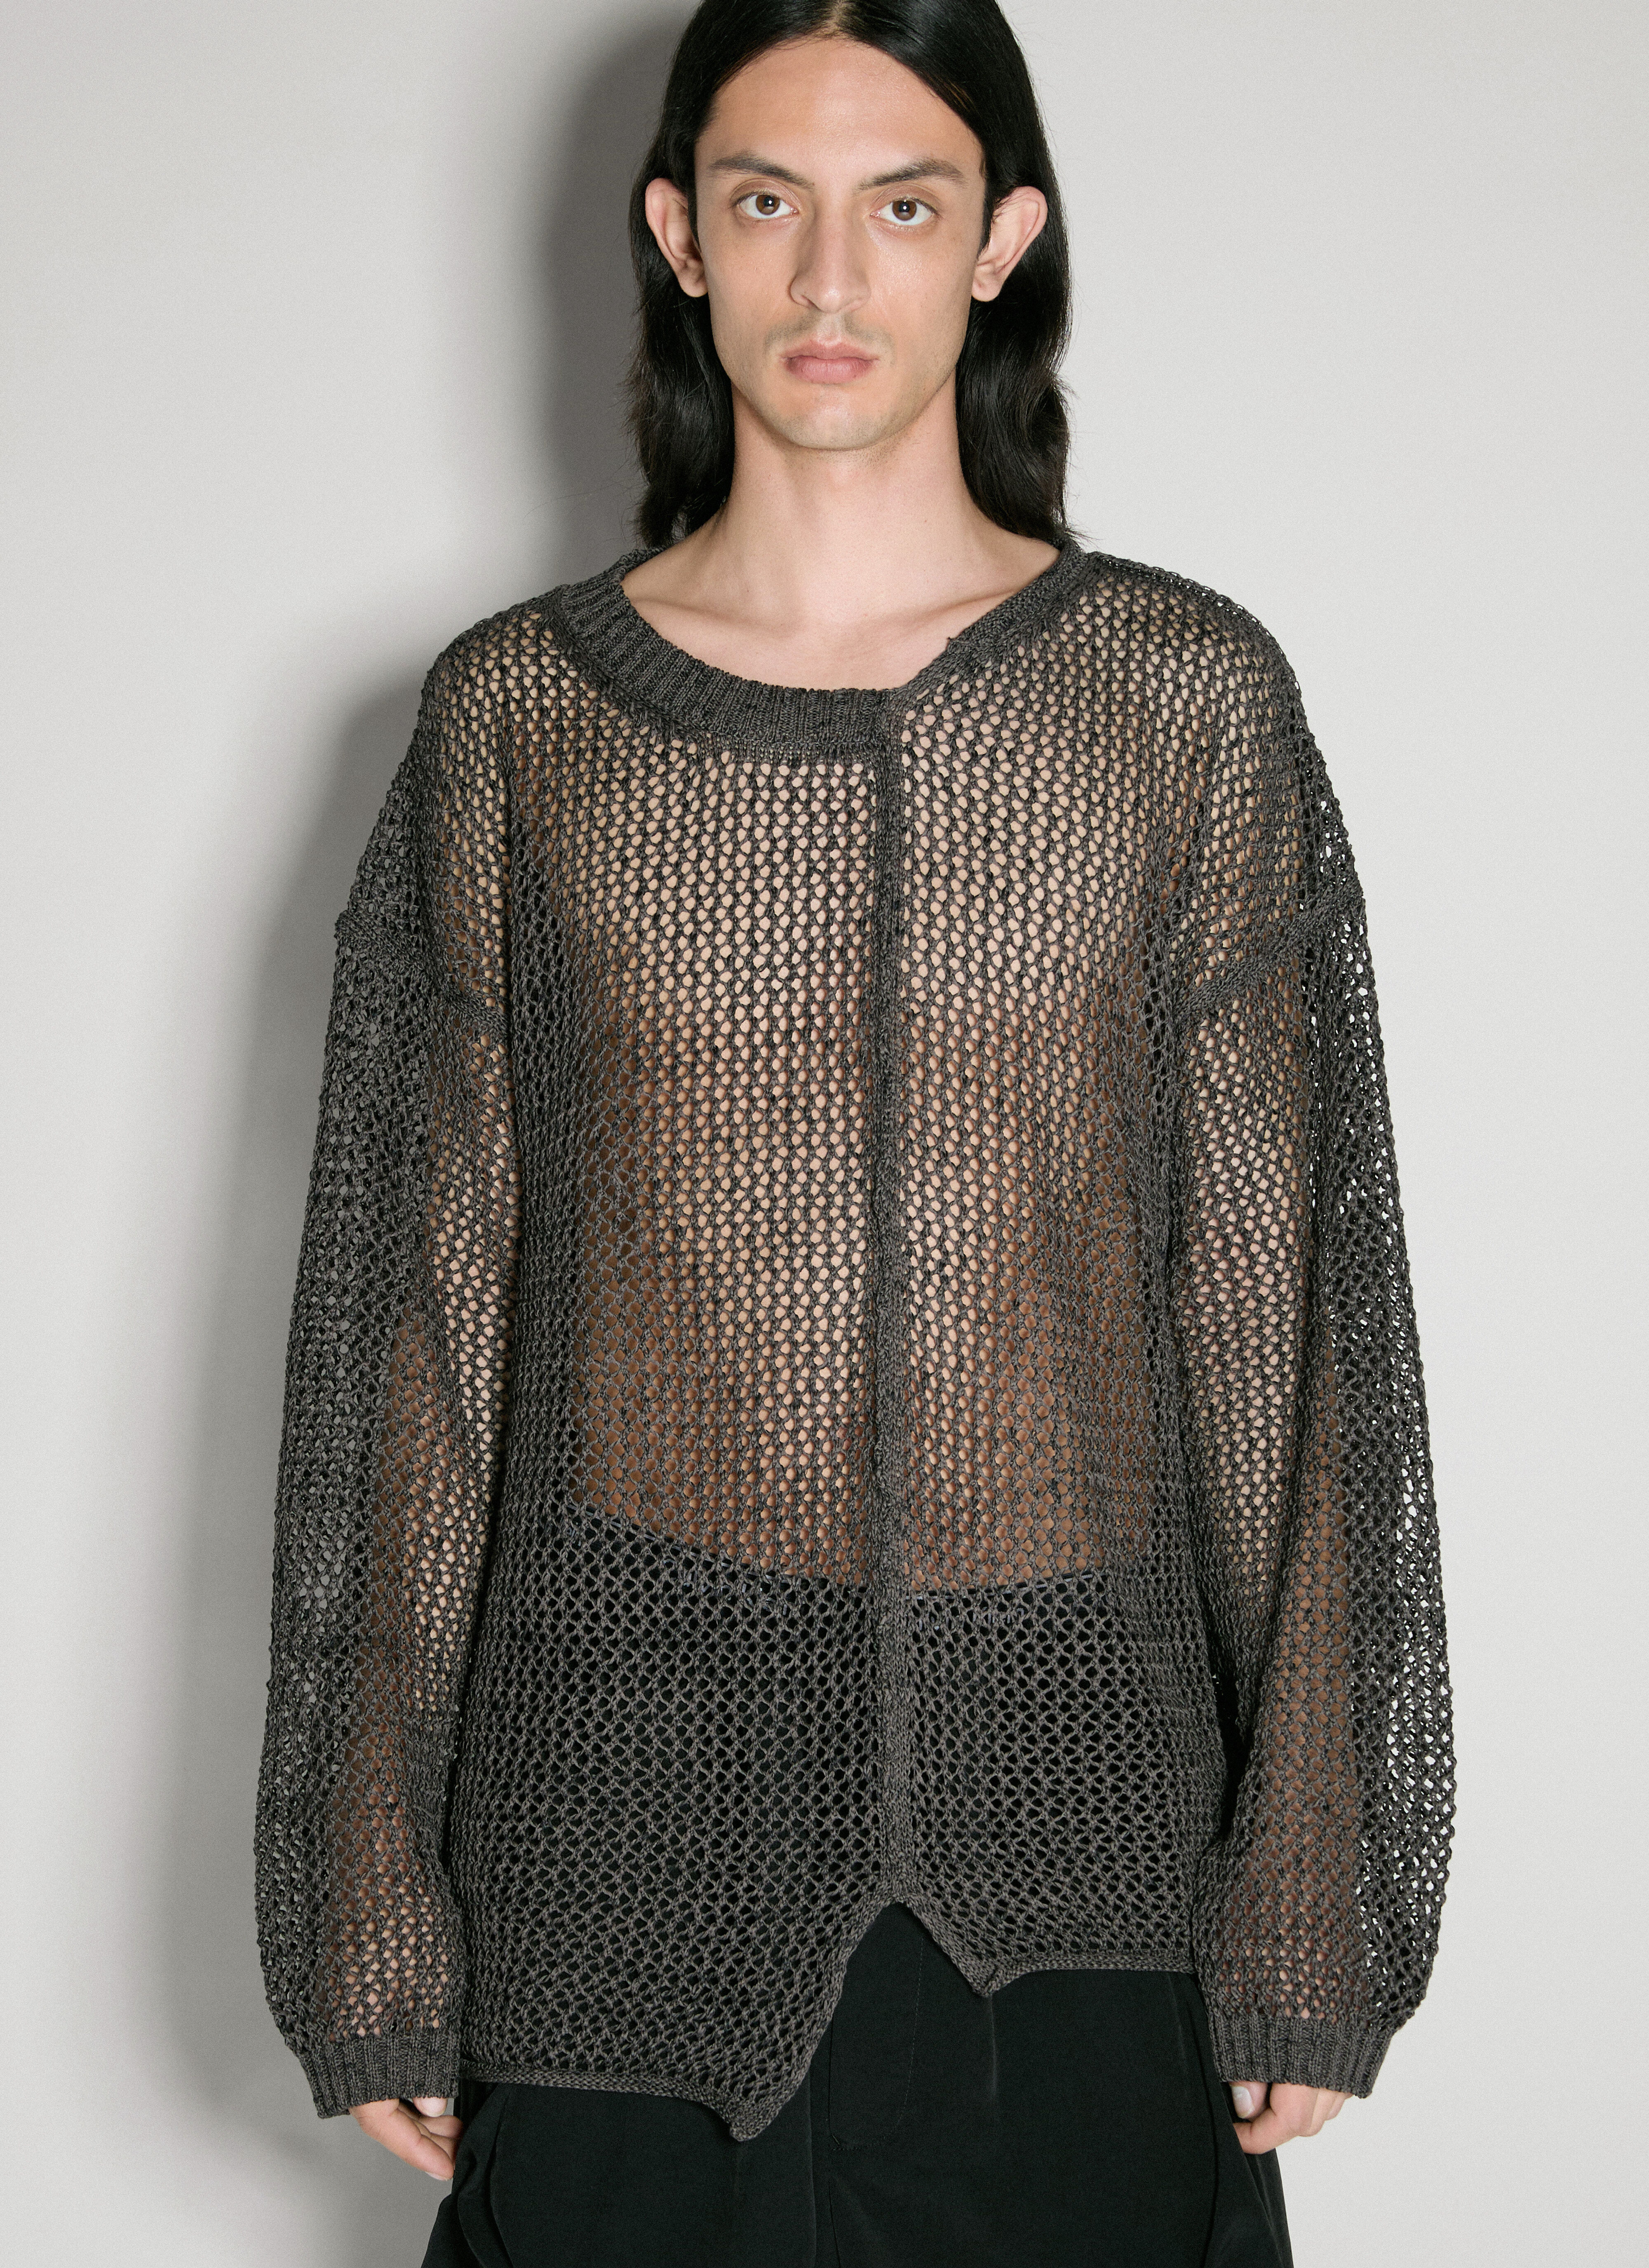 Yohji Yamamoto Uneven Open-Knit Sweater Black yoy0154015